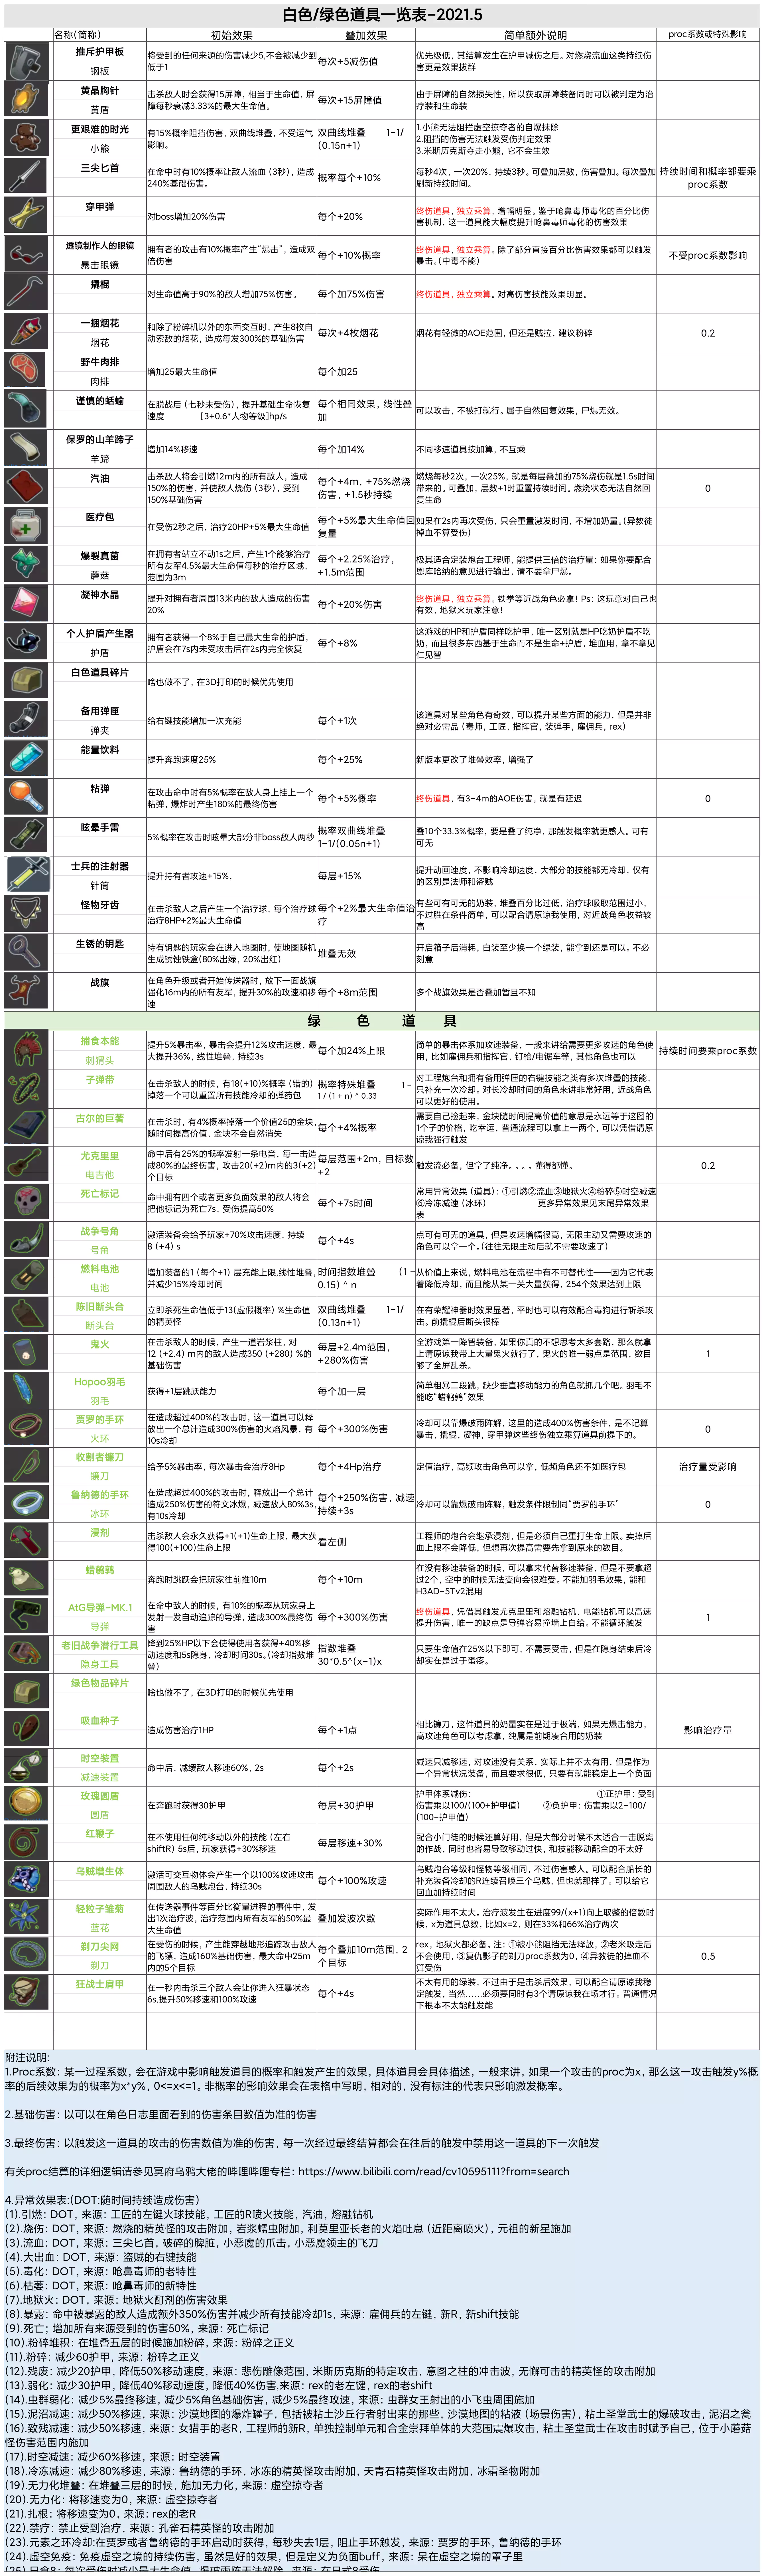 雨2白色绿色道具一览表(高清版).webp